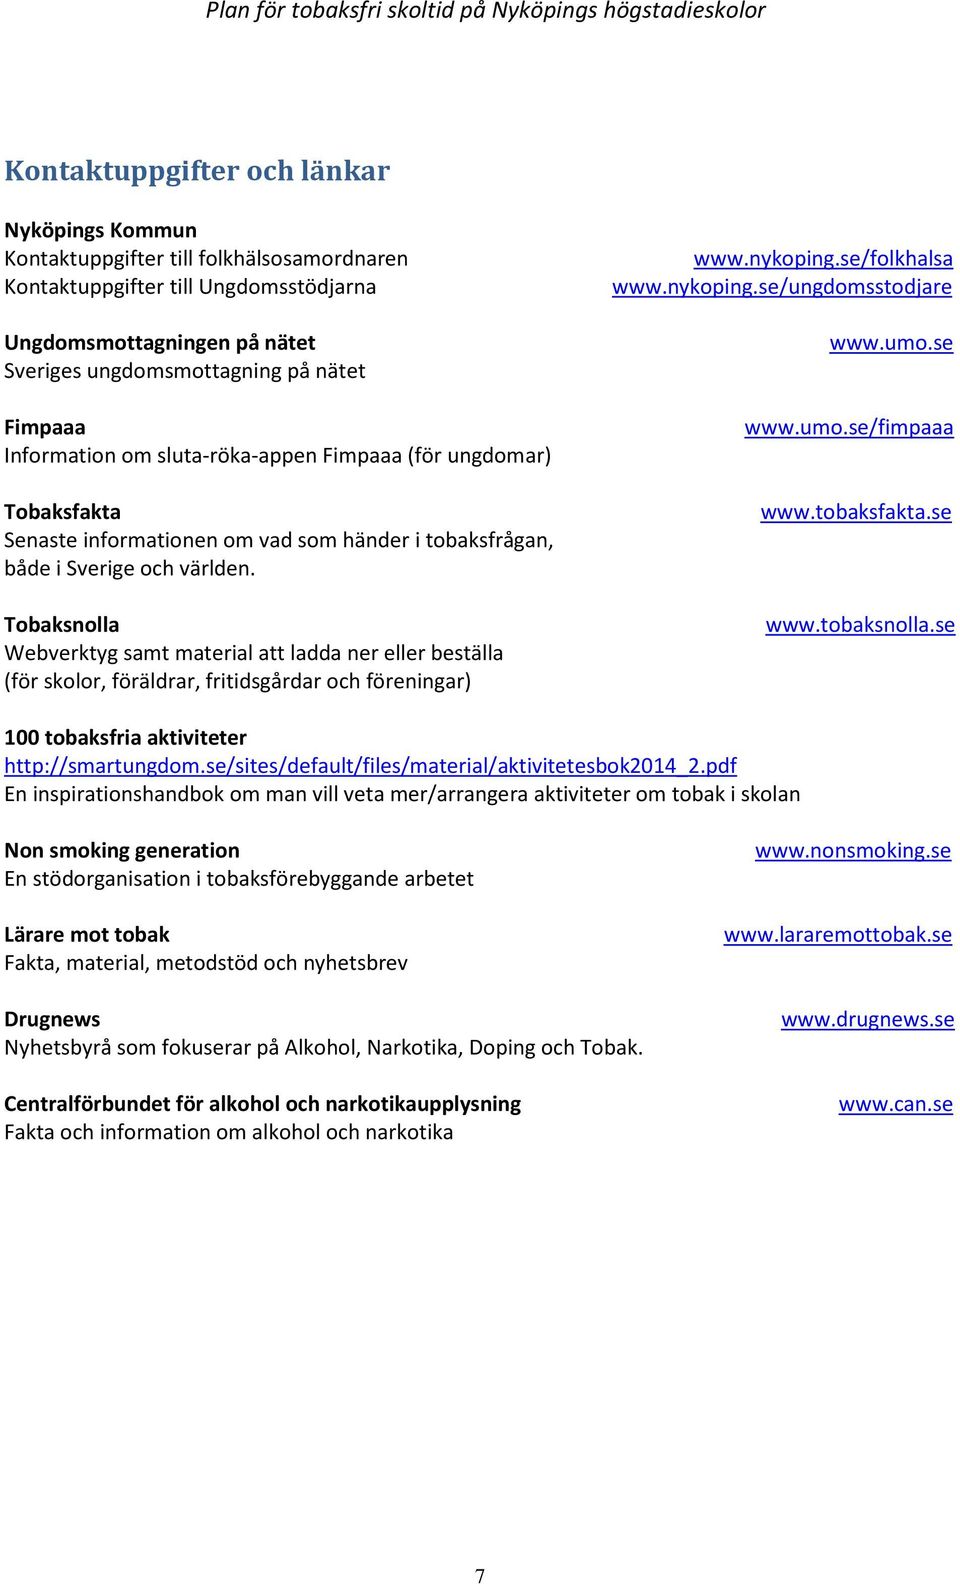 Tobaksnolla Webverktyg samt material att ladda ner eller beställa (för skolor, föräldrar, fritidsgårdar och föreningar) www.nykoping.se/folkhalsa www.nykoping.se/ungdomsstodjare www.umo.